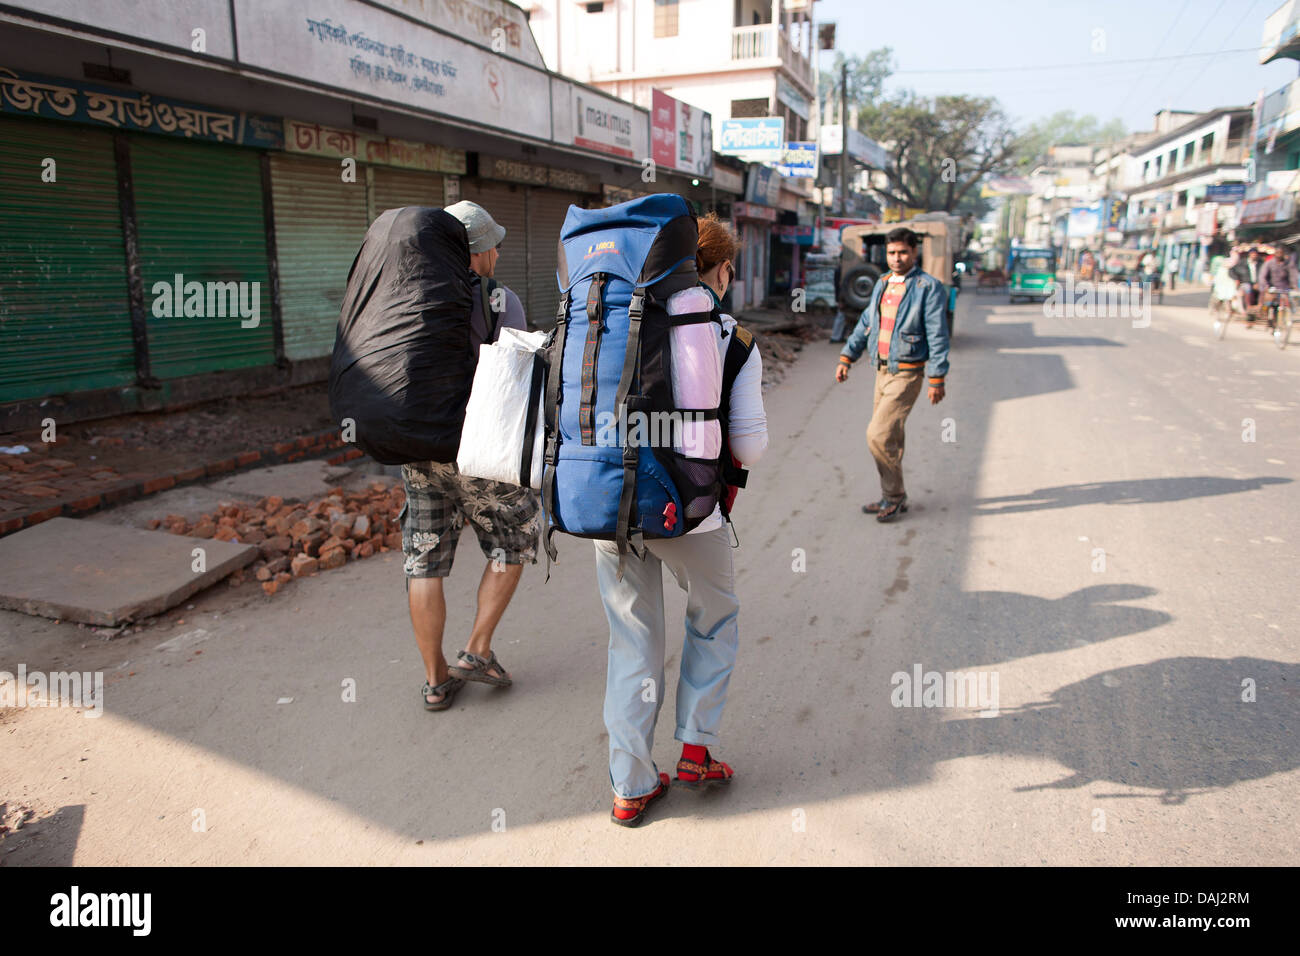 Los mochileros, viajando a través de Bangladesh y del Sudeste de Asia las calles de Srimongol walkalong para coger un autobús que transportaba paquetes. Foto de stock